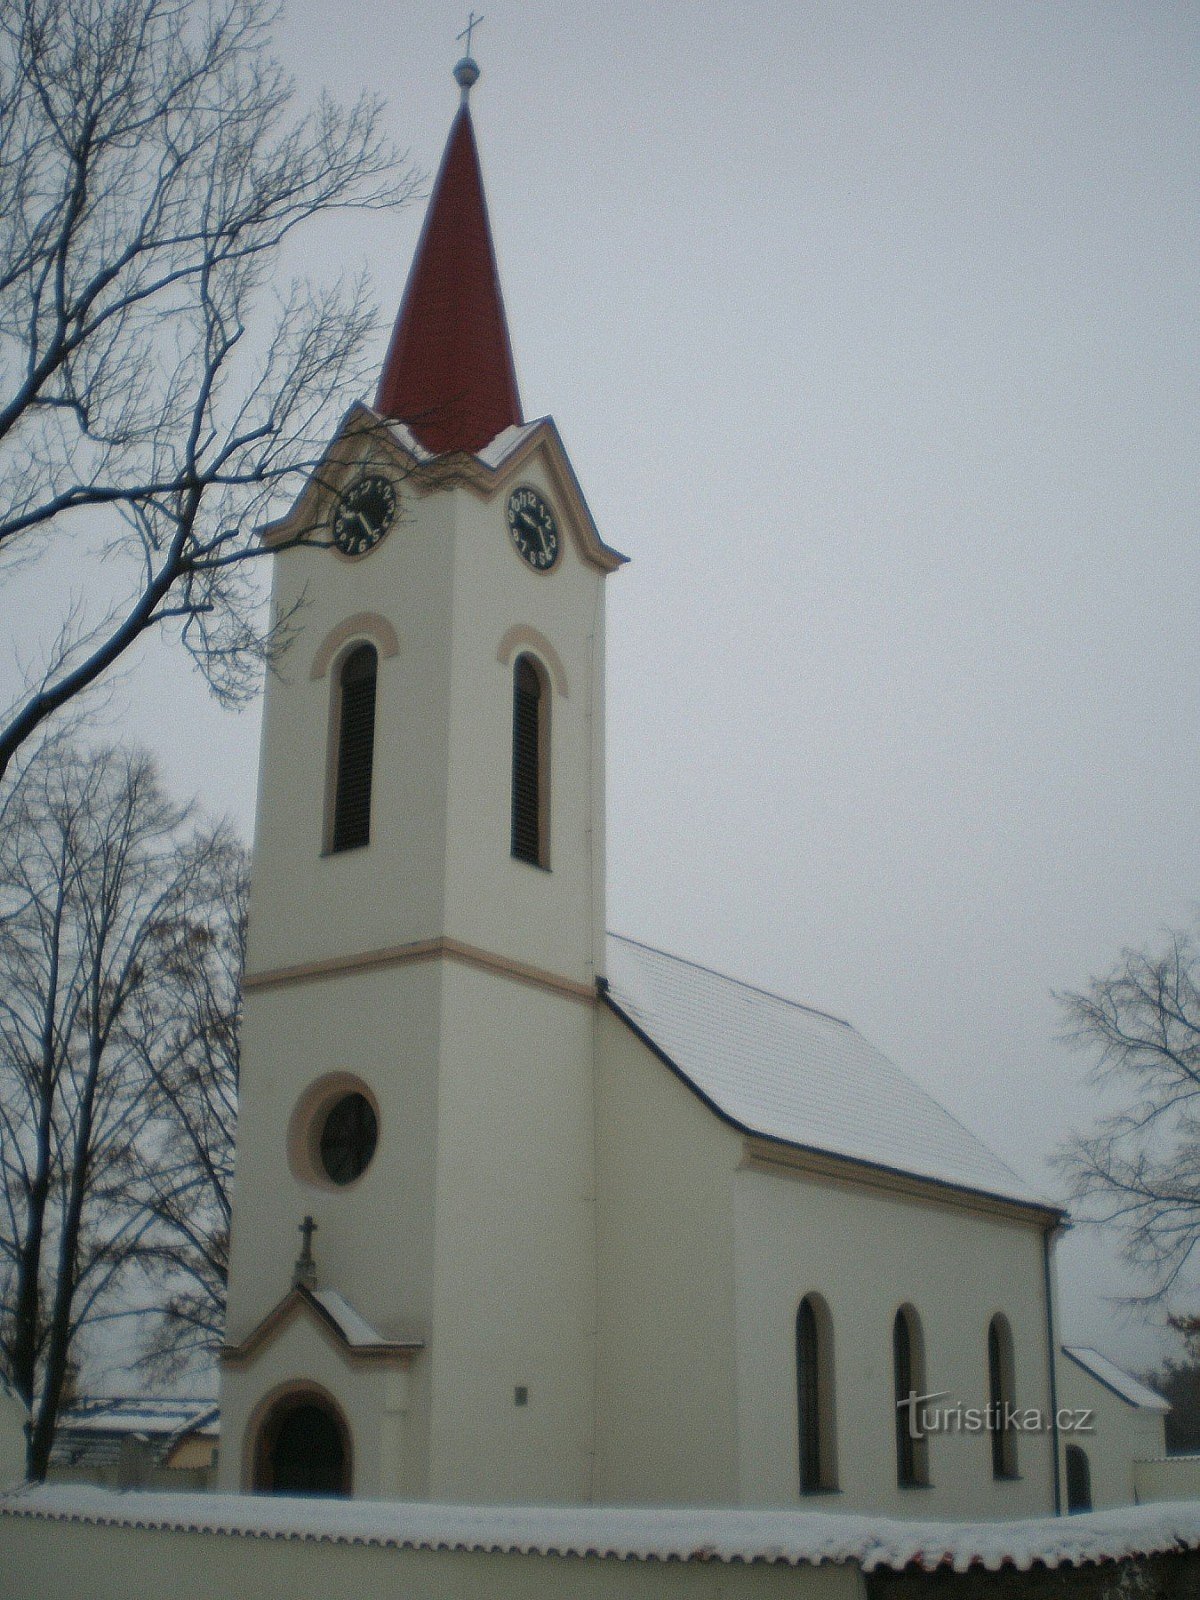 Dubeček - igreja de St. Peter